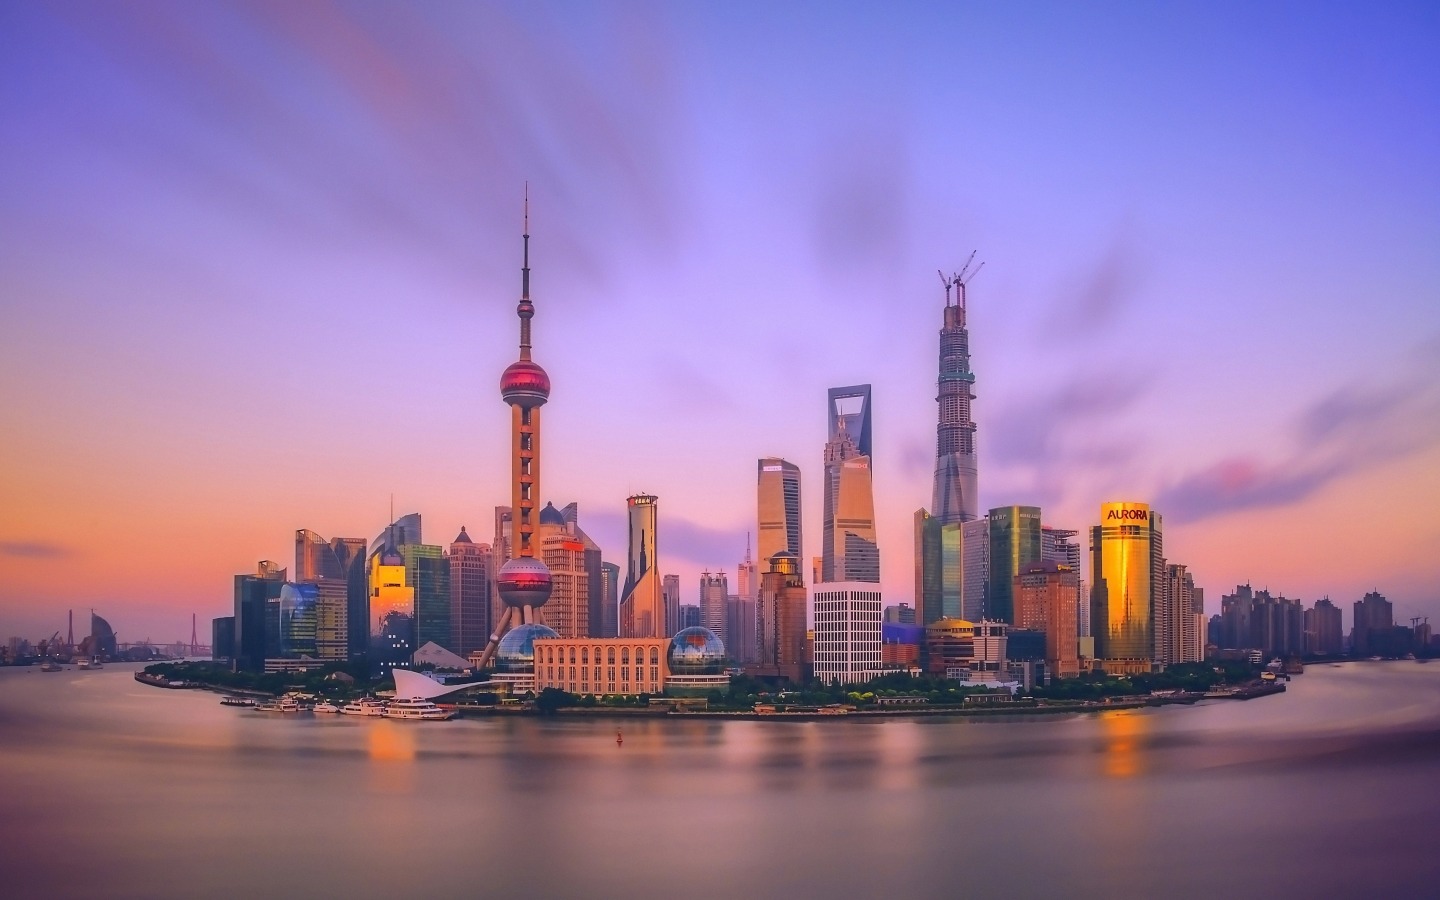 上海夜景图片 上海建筑风景图片壁纸 三千图片网